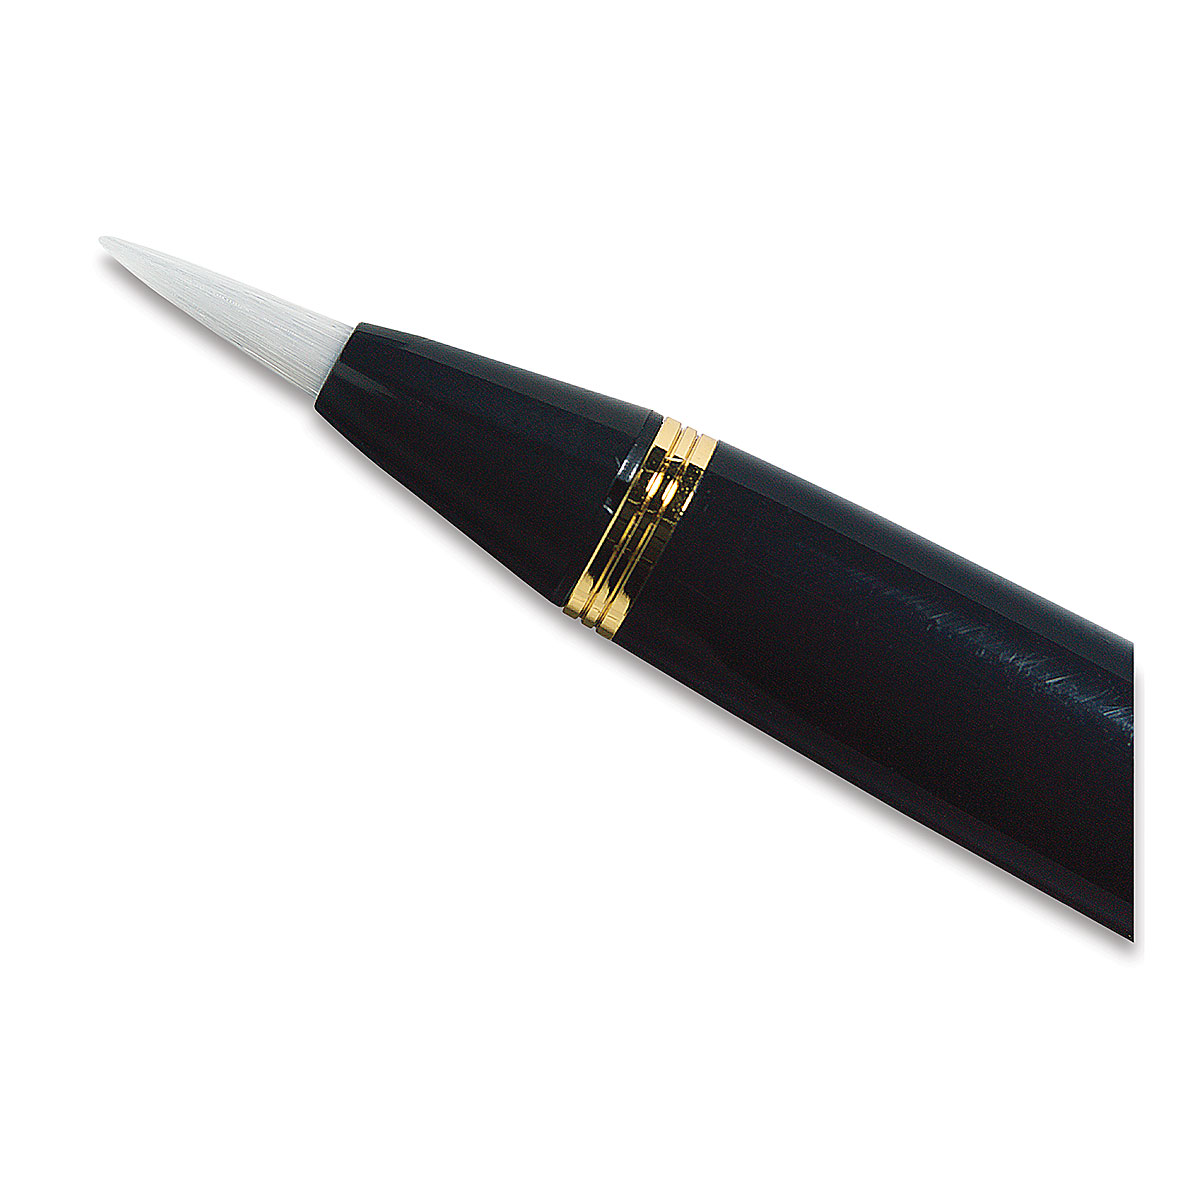 Kuretake Japanese Single Tip Brush Pen — Washi Arts